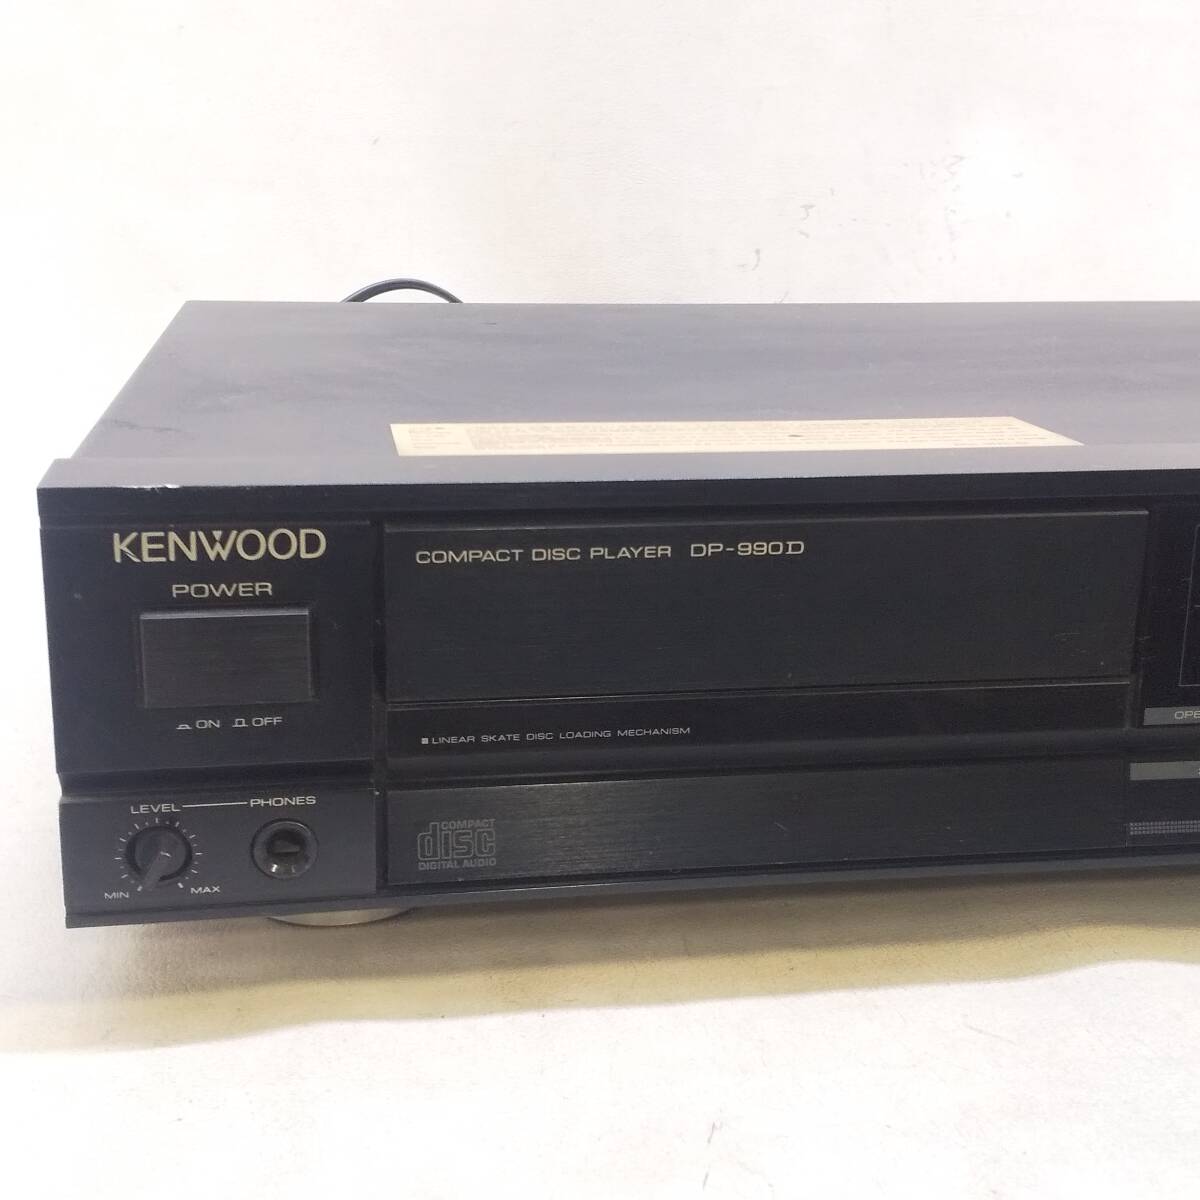 *KENWOOD CD плеер DP-990D корпус только Kenwood электризация не возможно Junk *R2366